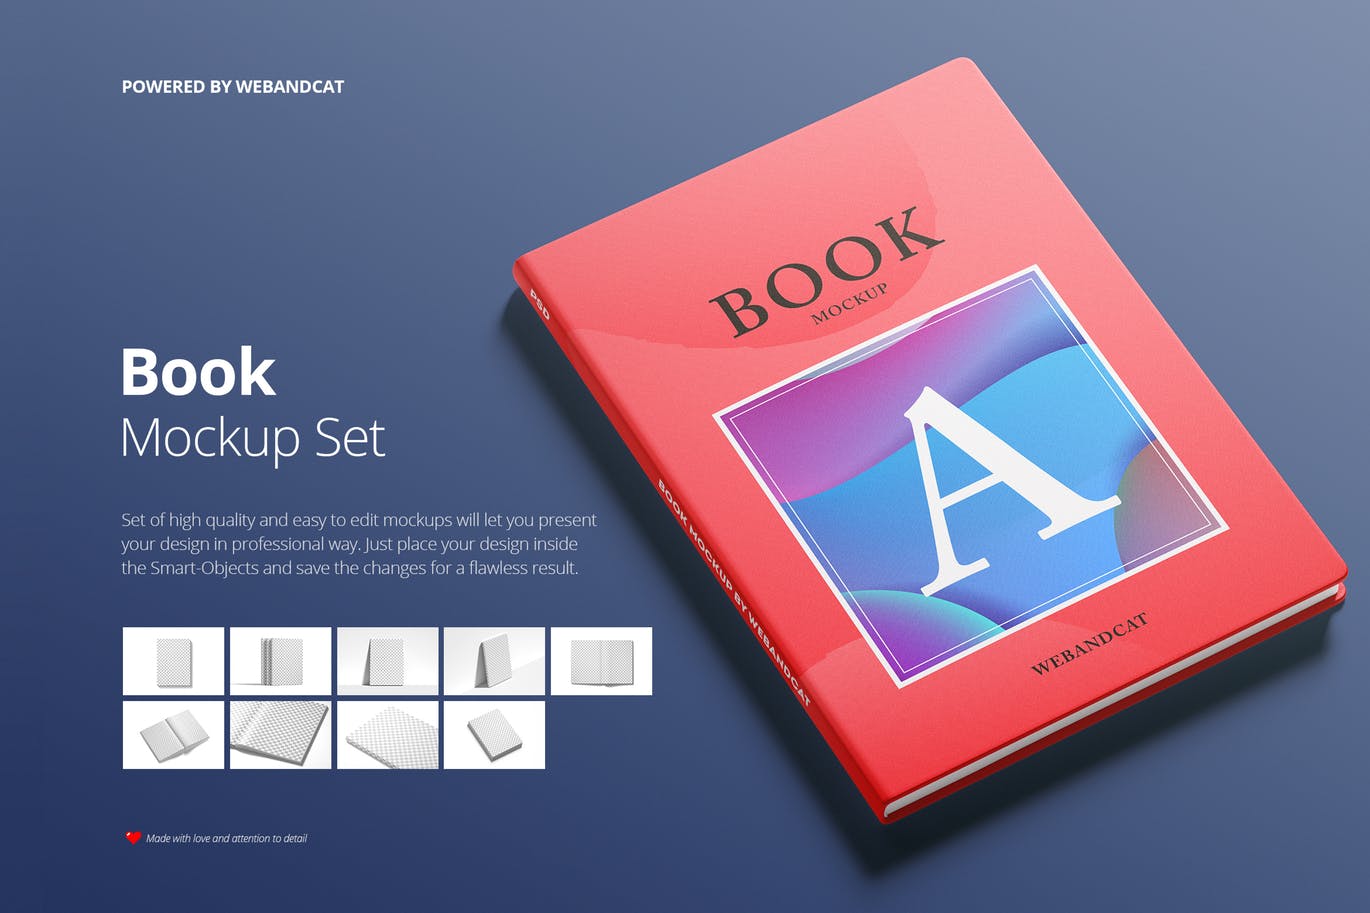 9套高质量且易于编辑记事本/书籍样机非凡图库精选 Book Mockup Set插图